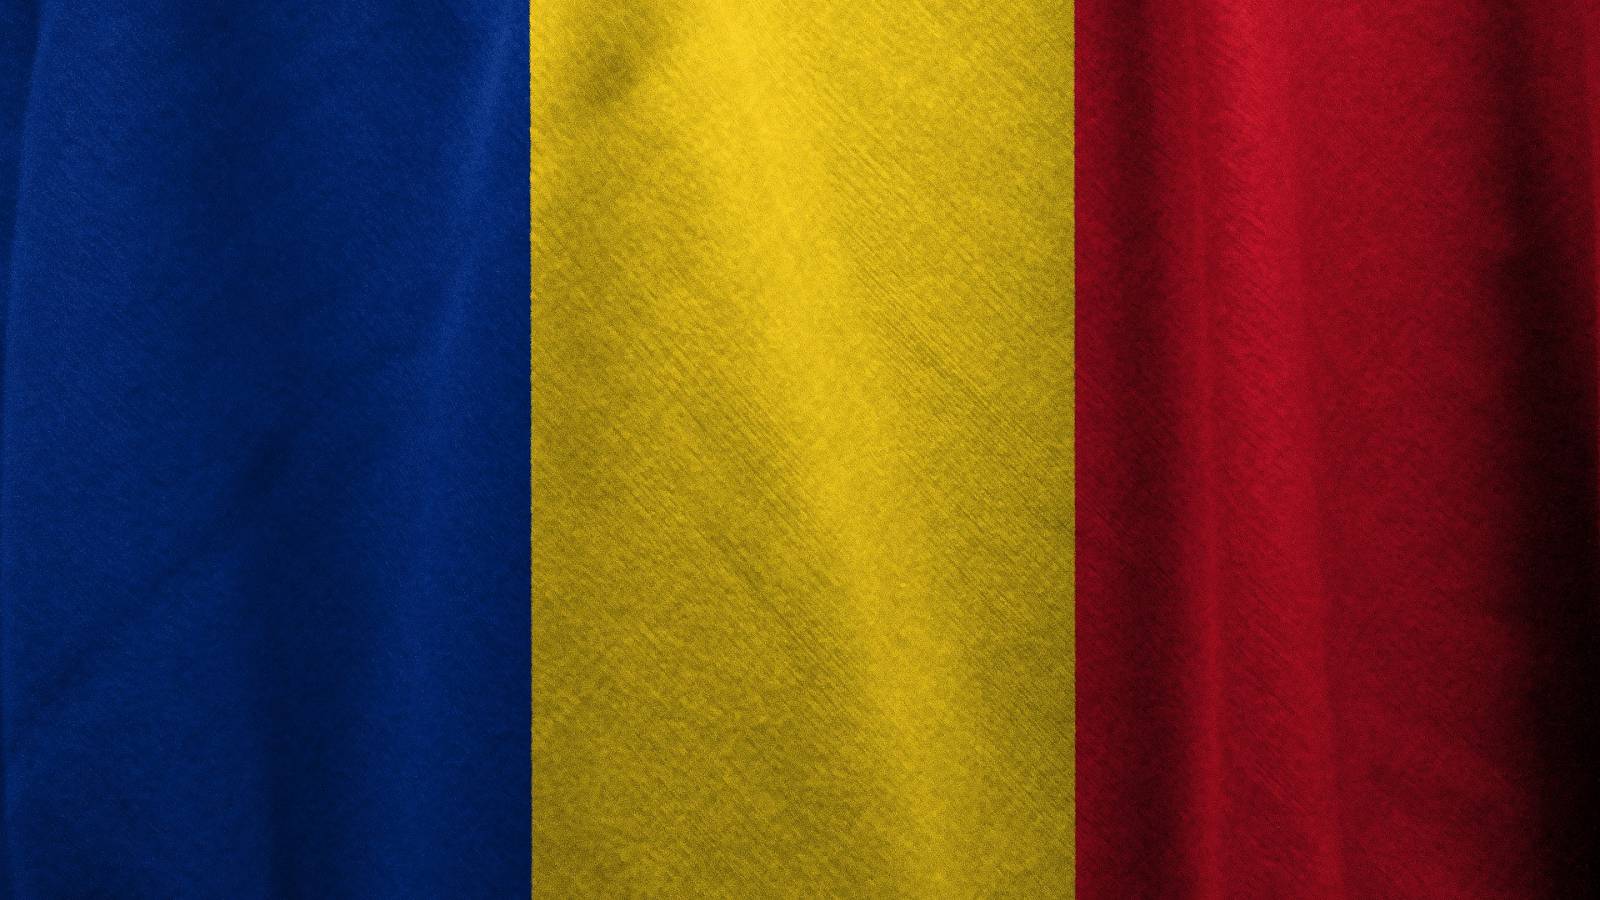 Nieuwe dag zonder enige dood veroorzaakt door COVID-19 Roemenië